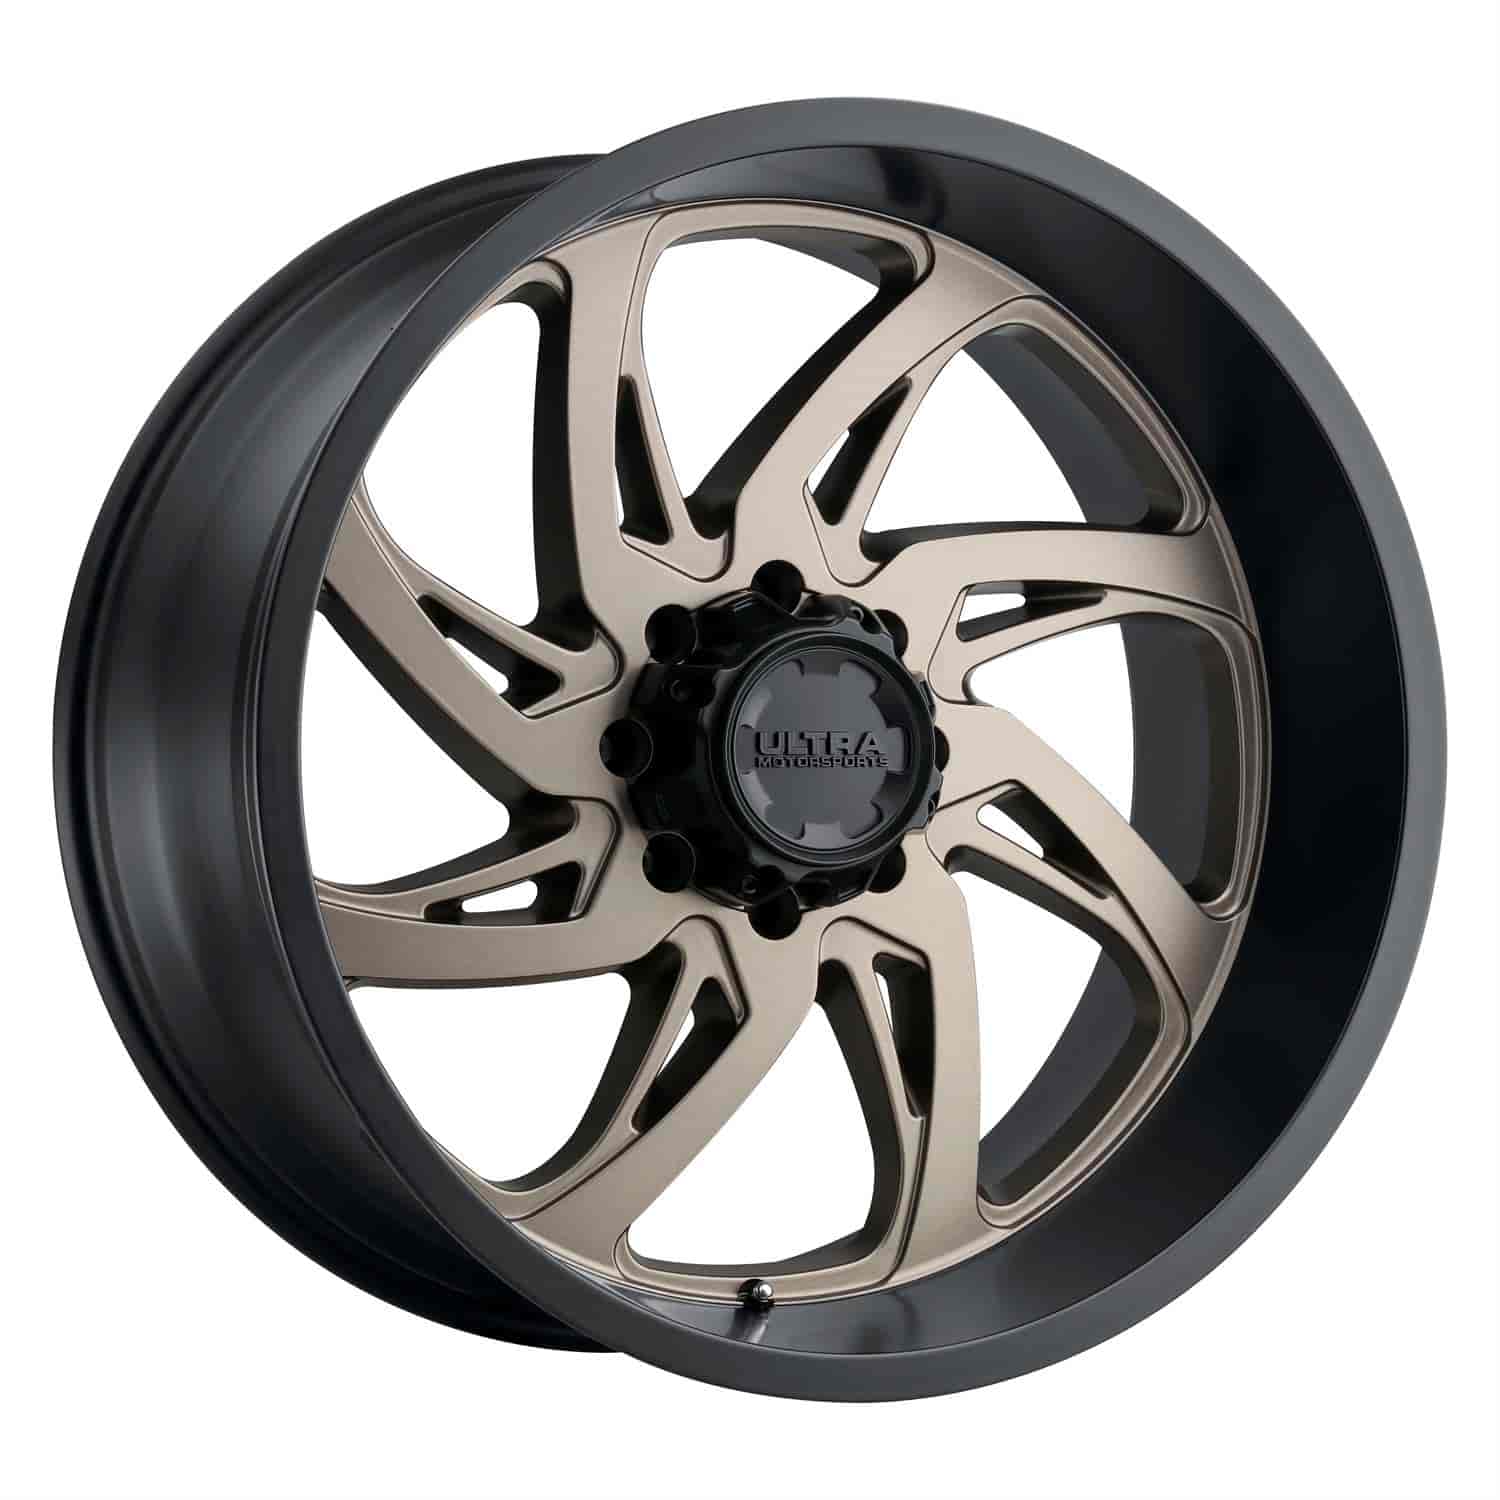 230-Series Villain Wheel, Size: 24x12", Bolt Pattern: 6x5.5"/6x135 mm [Dark Satin Bronze w/Satin Black Lip]